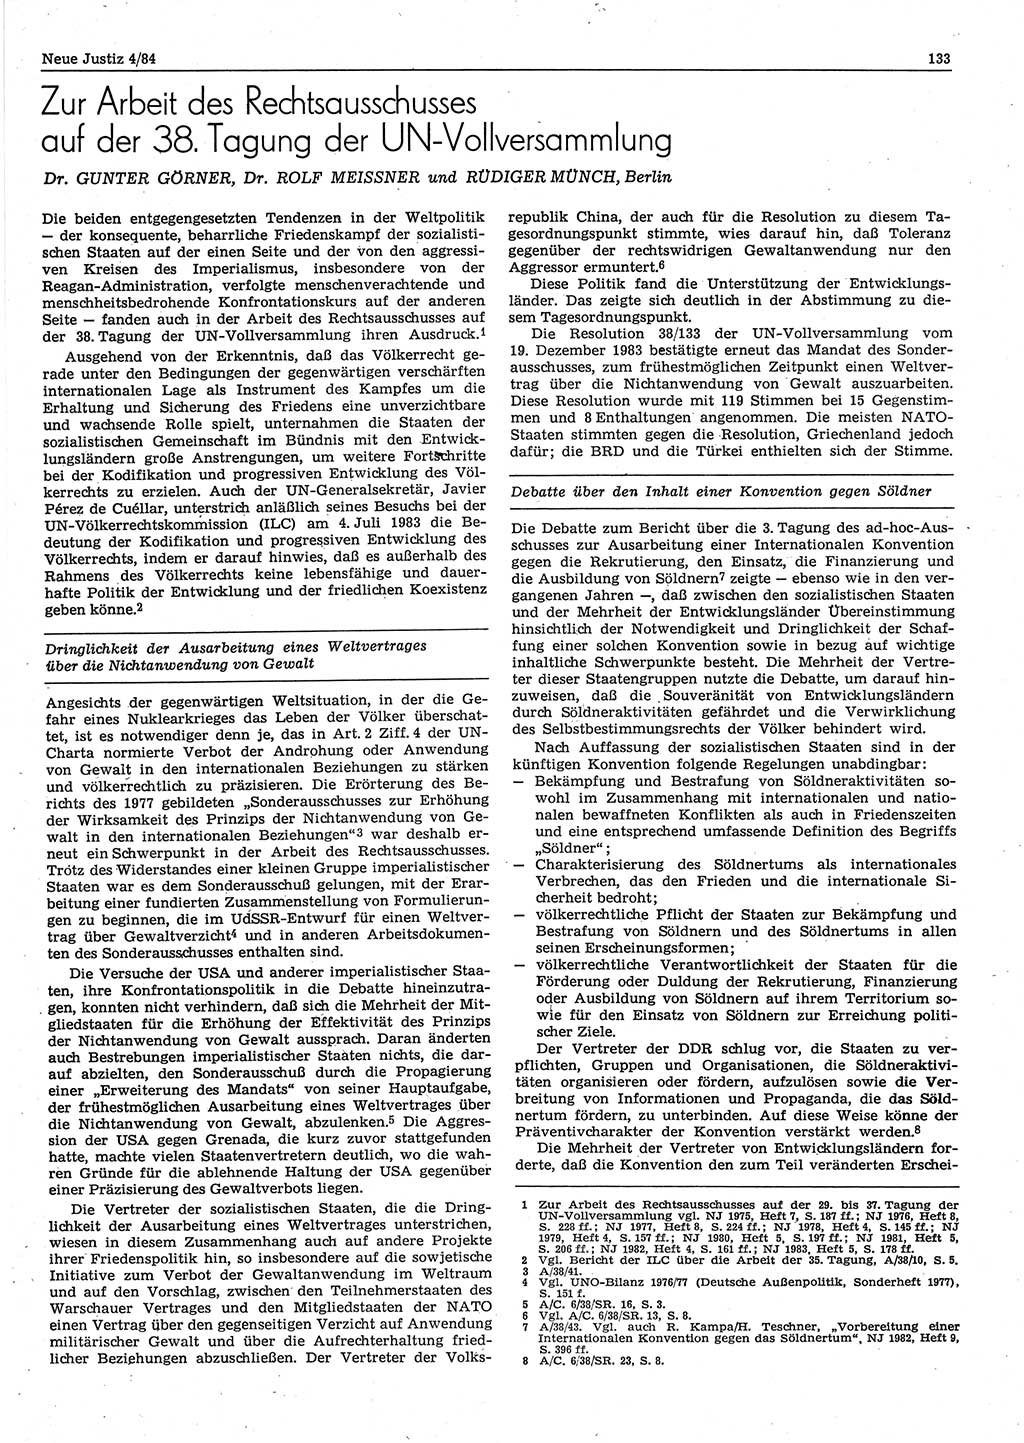 Neue Justiz (NJ), Zeitschrift für sozialistisches Recht und Gesetzlichkeit [Deutsche Demokratische Republik (DDR)], 38. Jahrgang 1984, Seite 133 (NJ DDR 1984, S. 133)